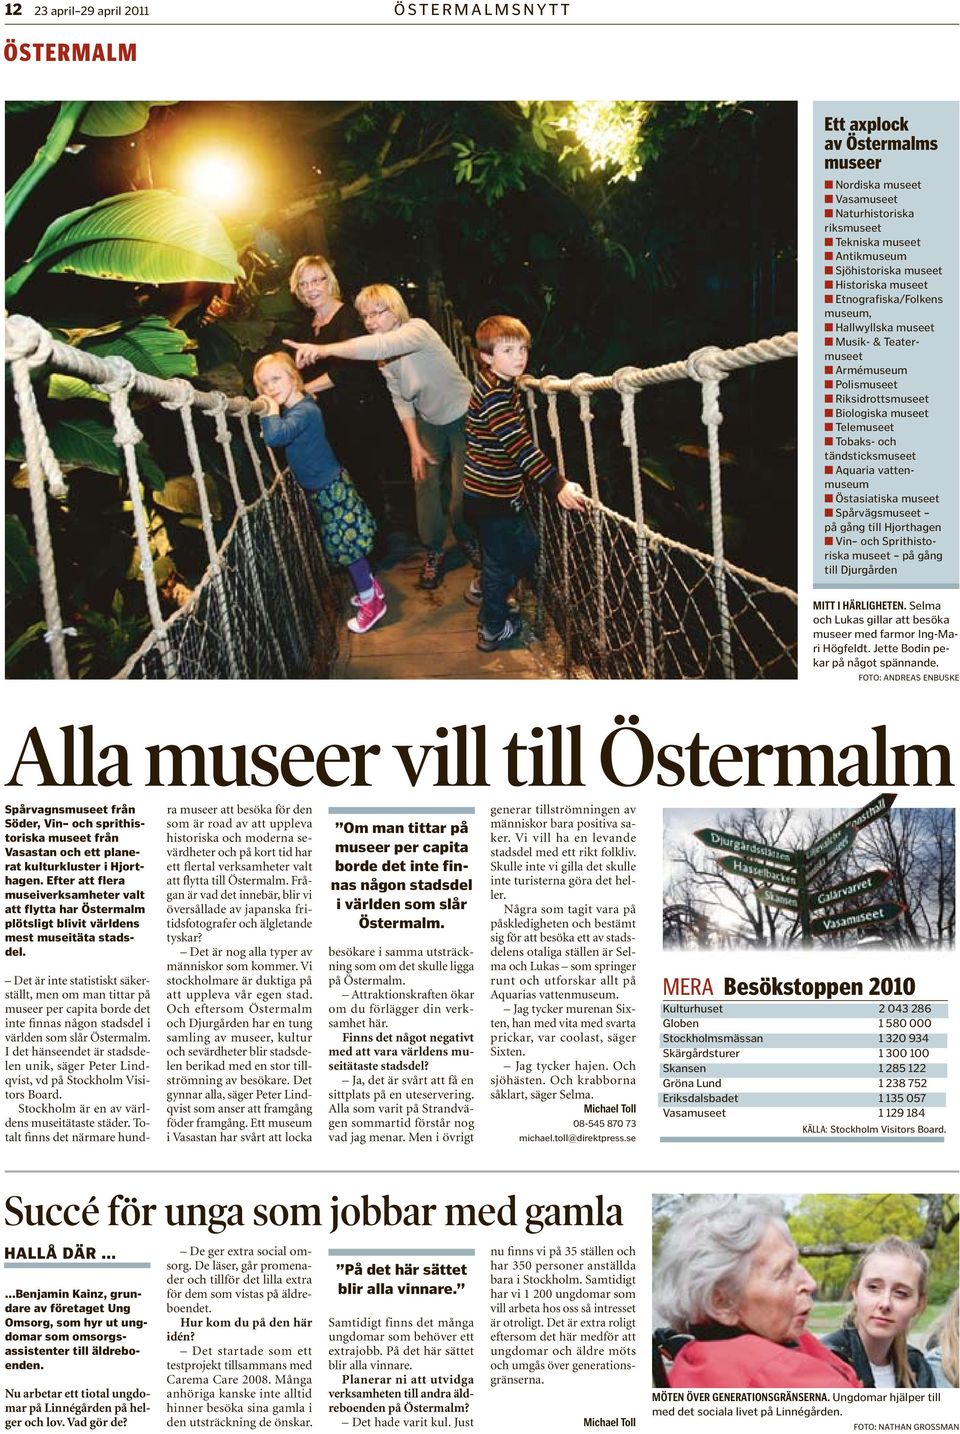 Östasiatiska museet Spårvägsmuseet på gång till Hjorthagen Vin och Sprithistoriska museet på gång till Djurgården MITT I HÄRLIGHETEN.